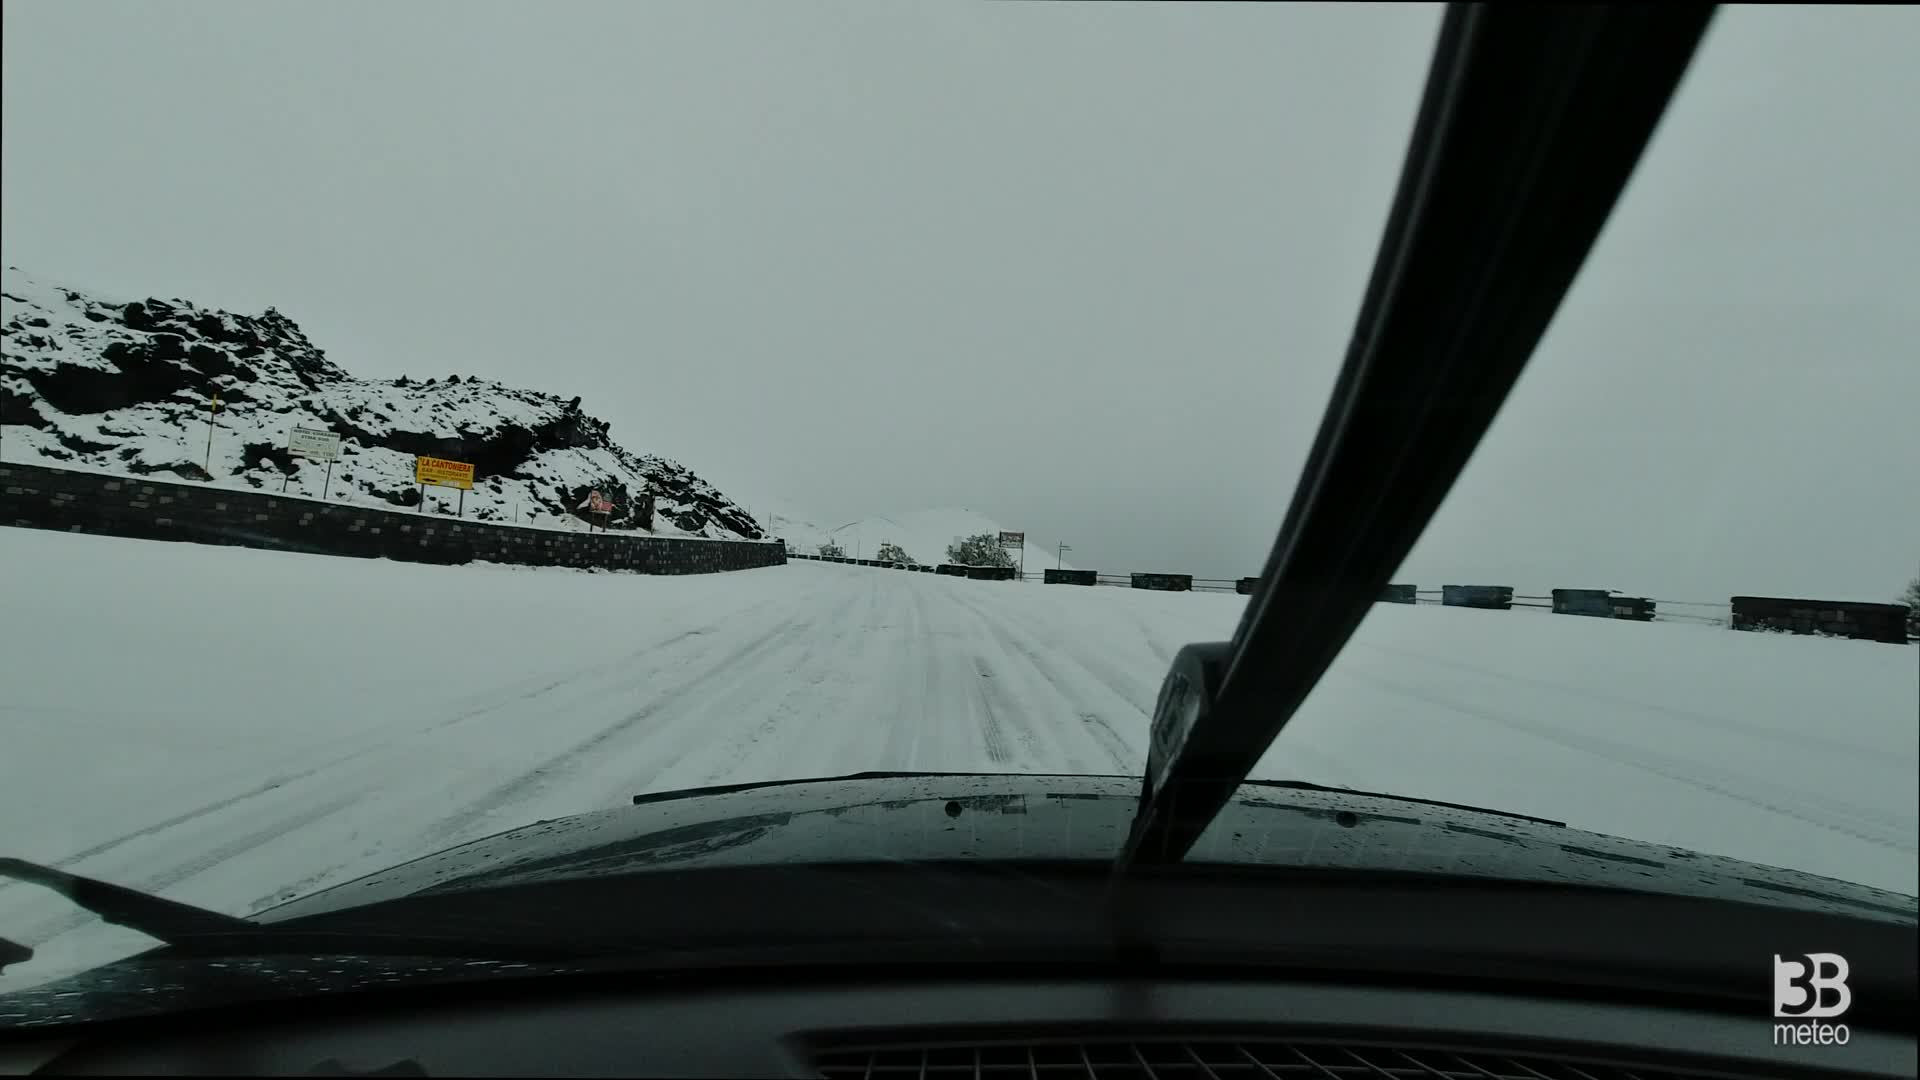 Cronaca meteo - Etna, Sp92 ammantata di neve: camera car - Video